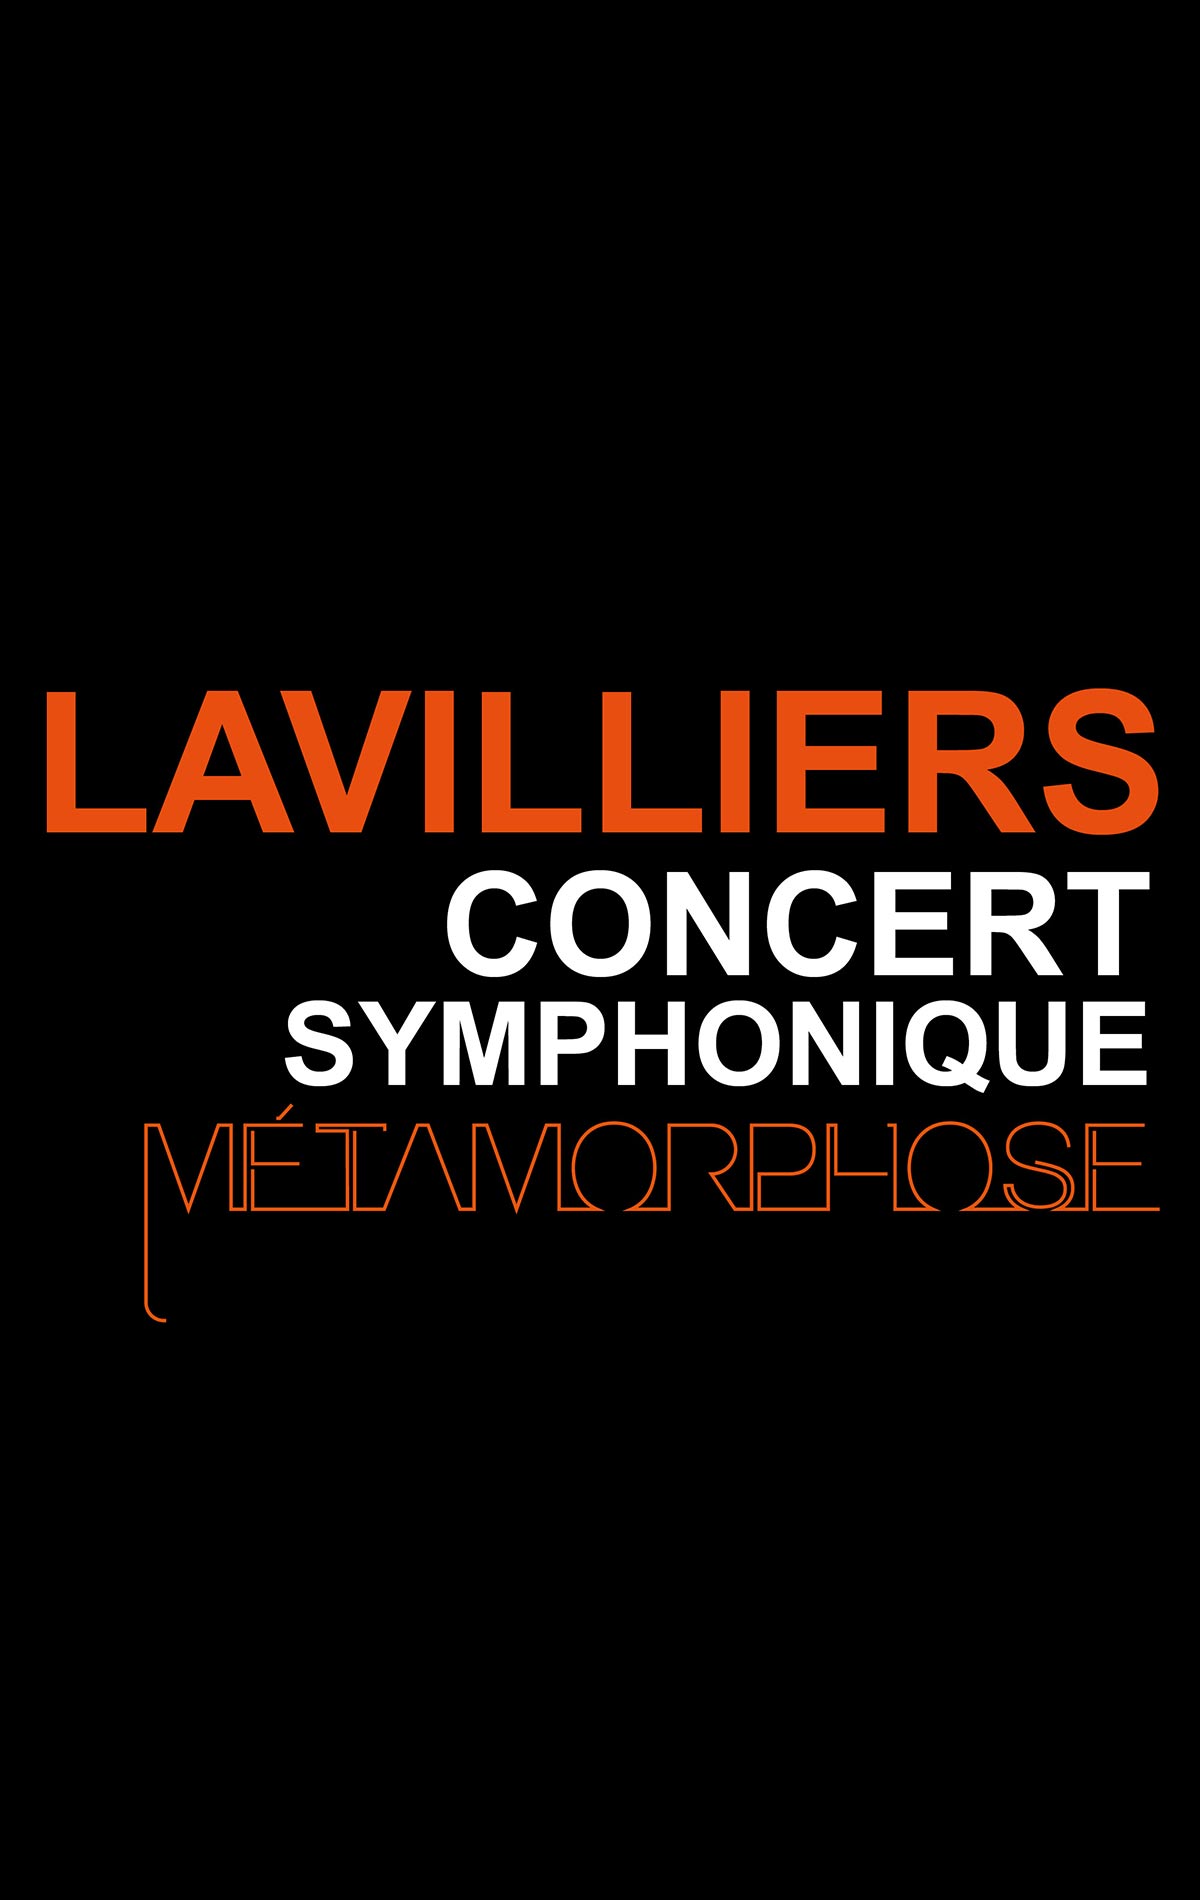 Bernard Lavilliers at Nouveau Siècle Tickets